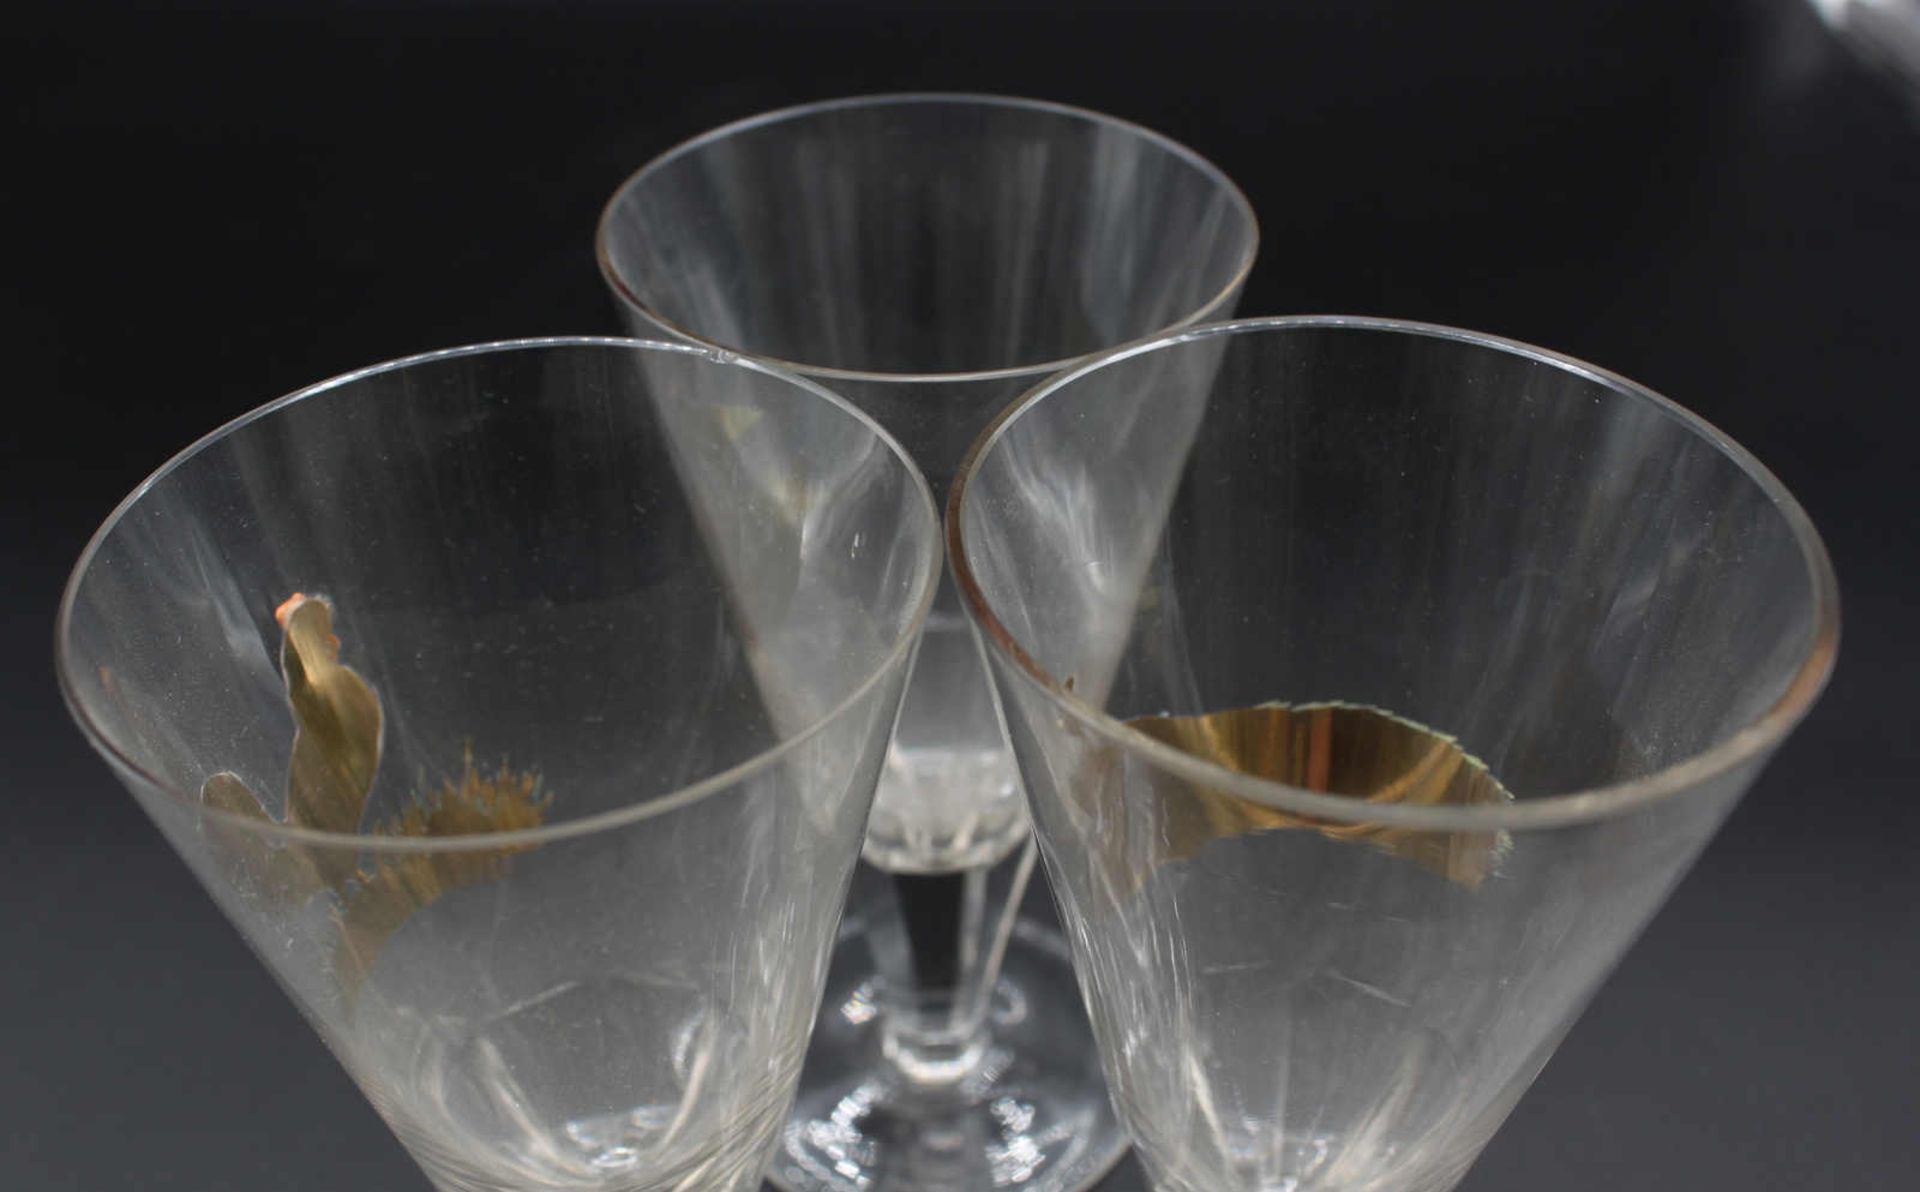 Spitzkelche Glas, 3 teilig, mit aufgelegten, farbigen Jagdmotiven - Vögel, geschliffener Fuß. 1 Glas - Image 3 of 4